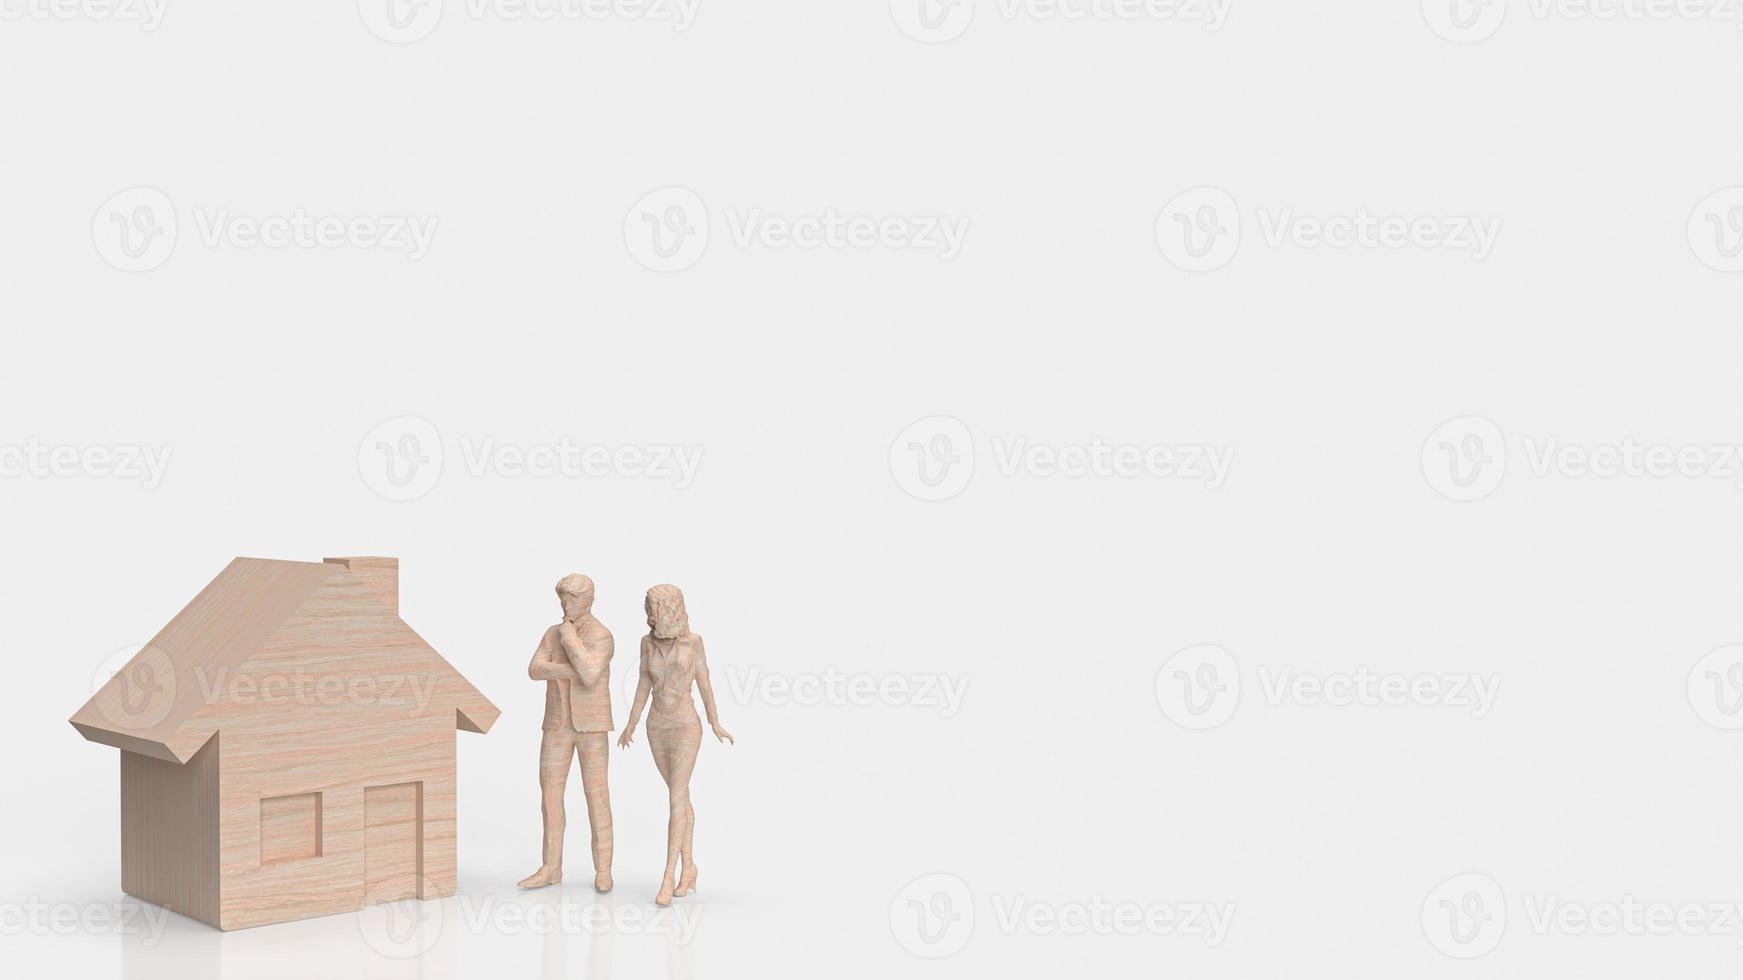 de Hem trä och figur på vit bakgrund för fast egendom eller egendom begrepp 3d tolkning foto